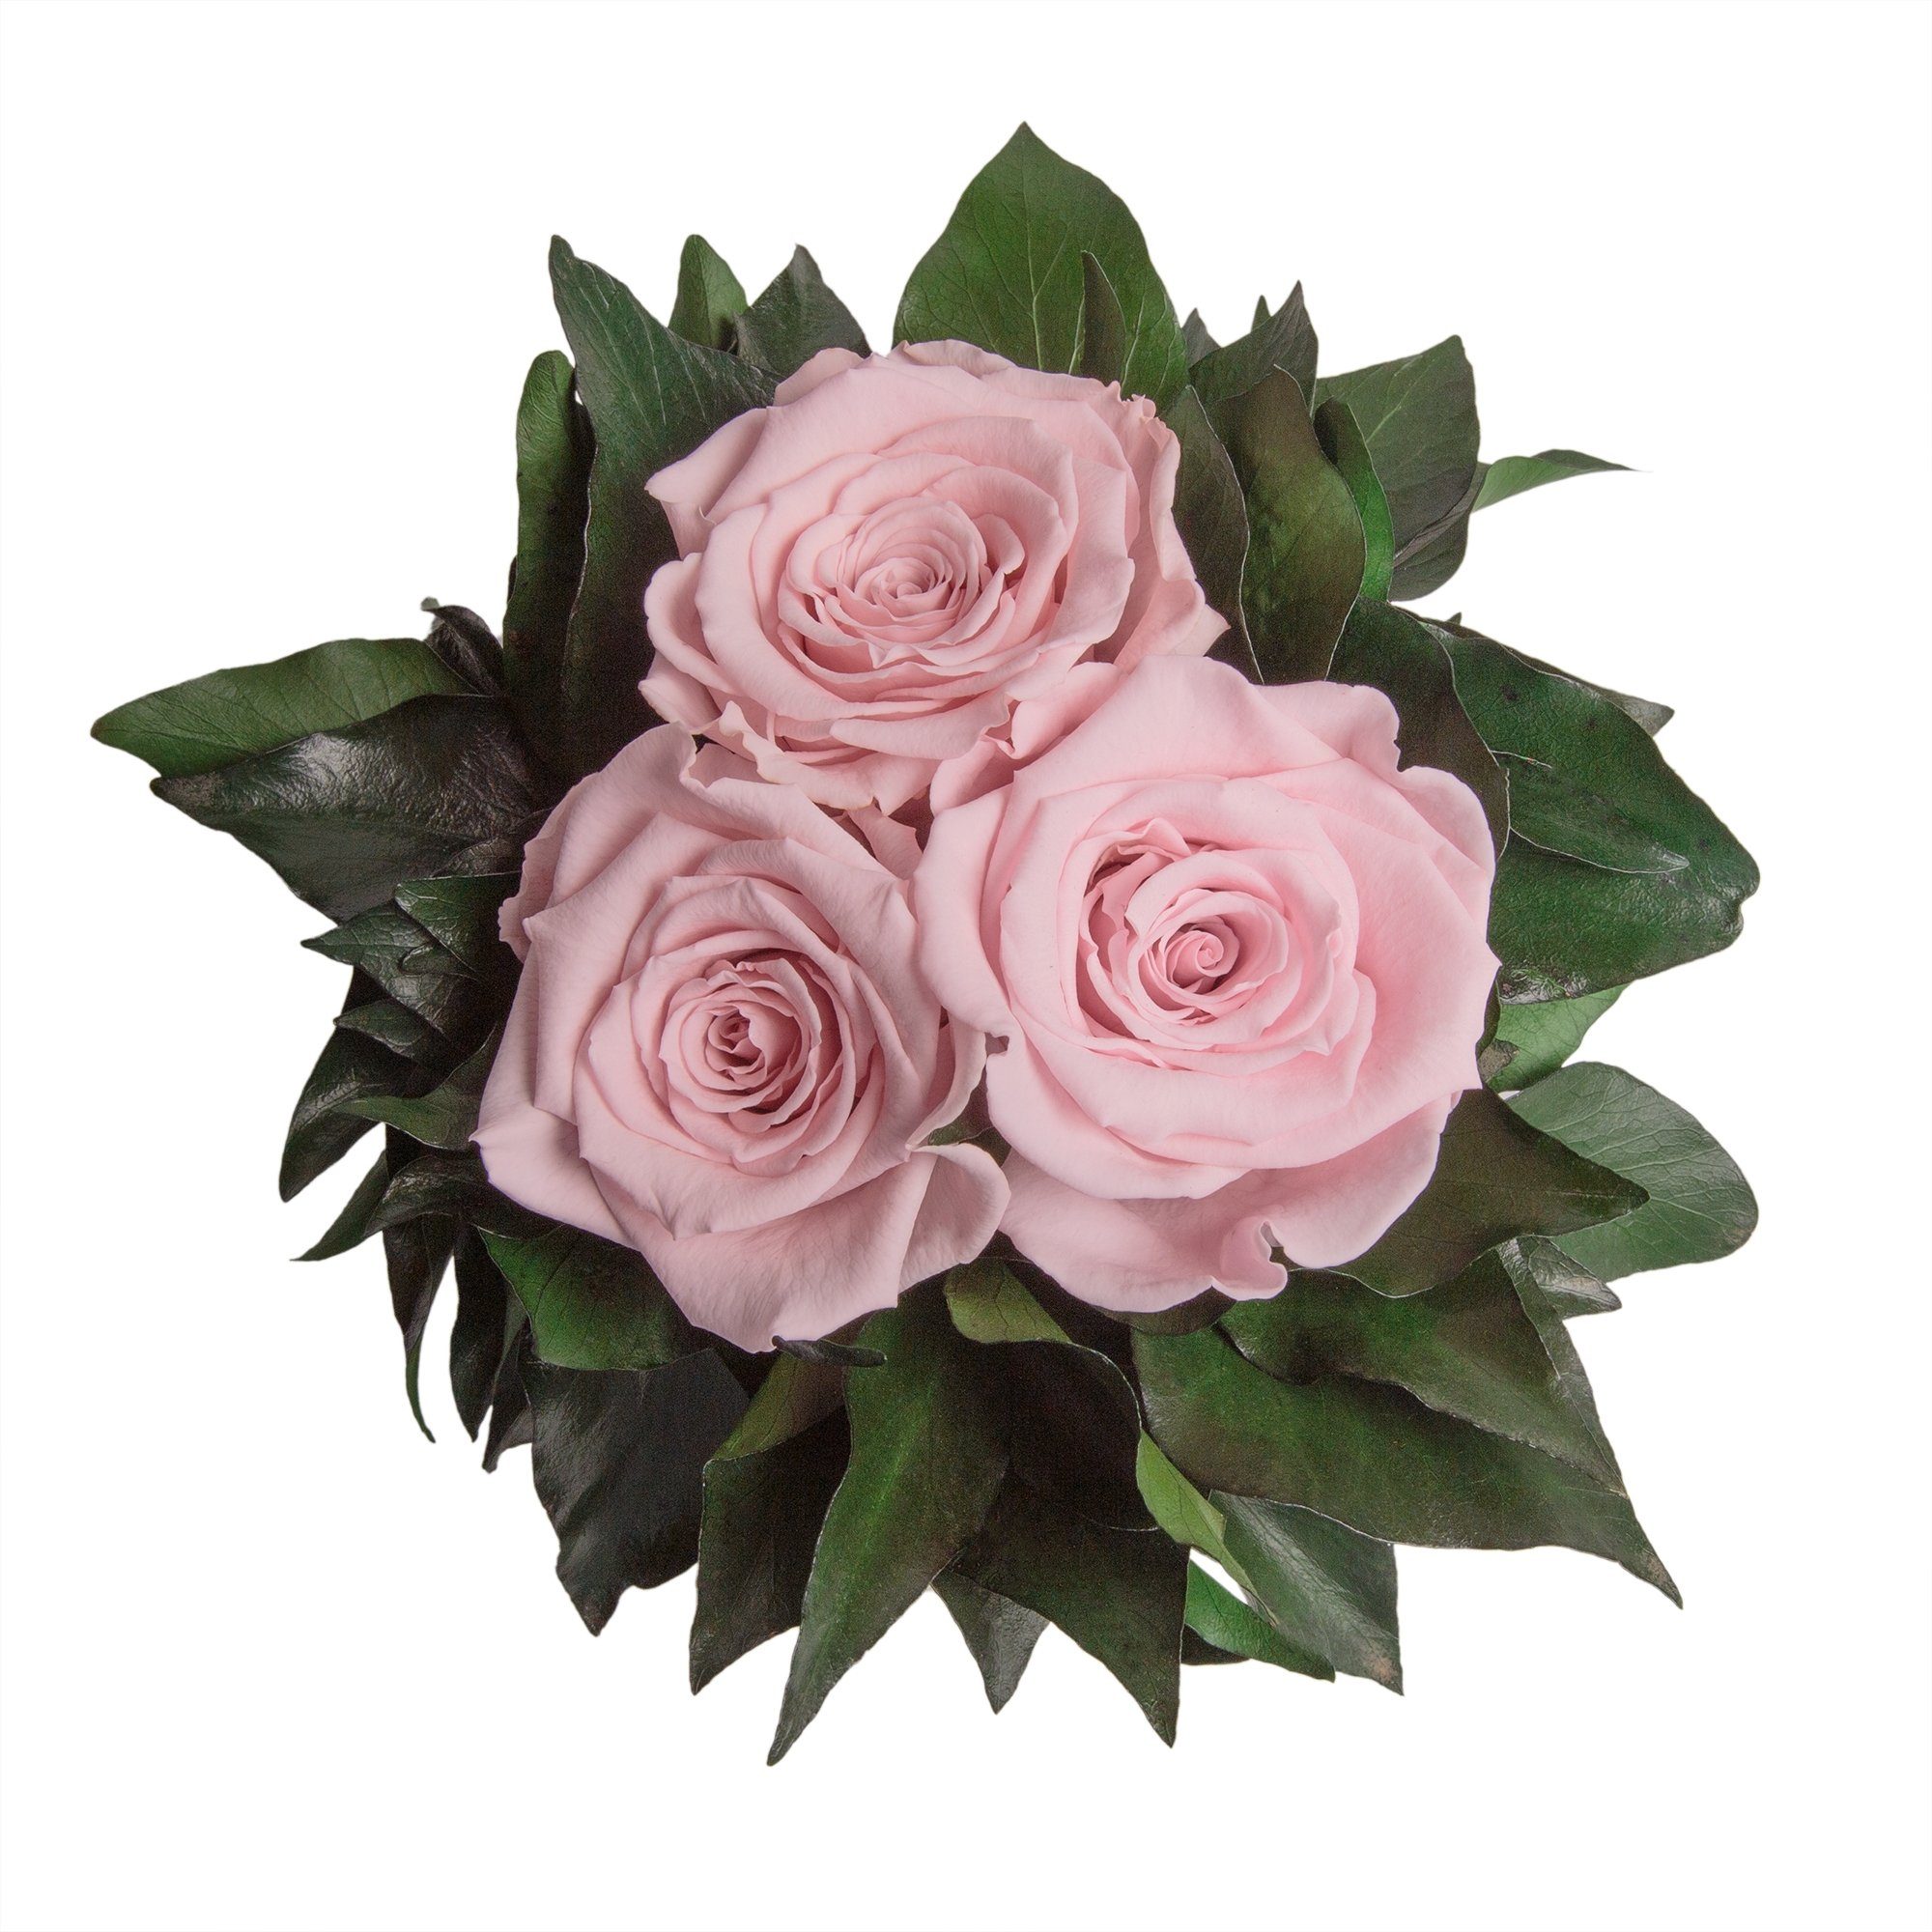 Kunstorchidee 3 Infinity Rosen silberfarbene Rosa 15 cm, Deko haltbar Blumenstrauß zu Wohnzimmer Rose Heidelberg, Rose, Vase SCHULZ ROSEMARIE bis Höhe Jahre 3